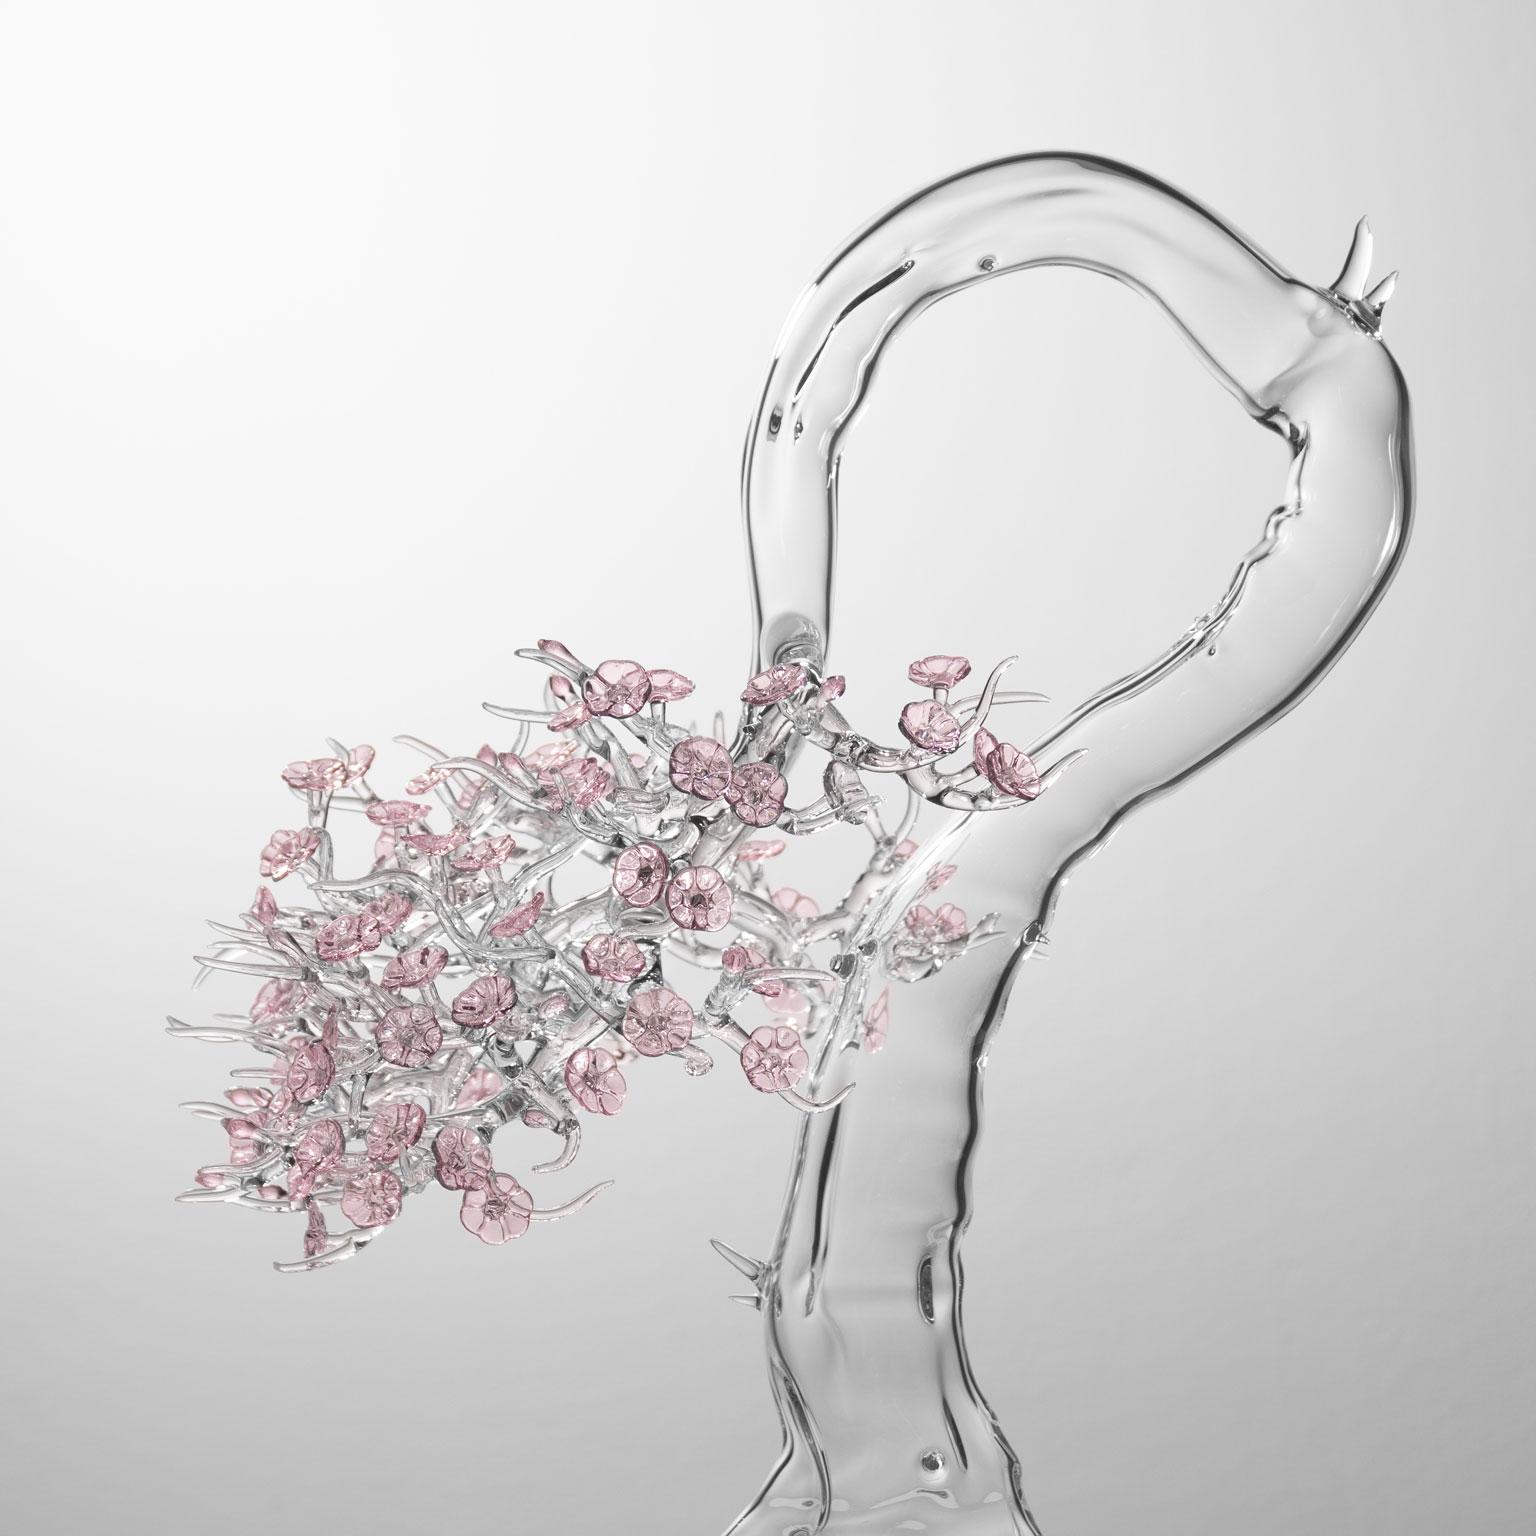 Italian Contemporary Blossom Bonsai Hand Blown Glass Sculpture 2023 #02 Simone Crestani For Sale